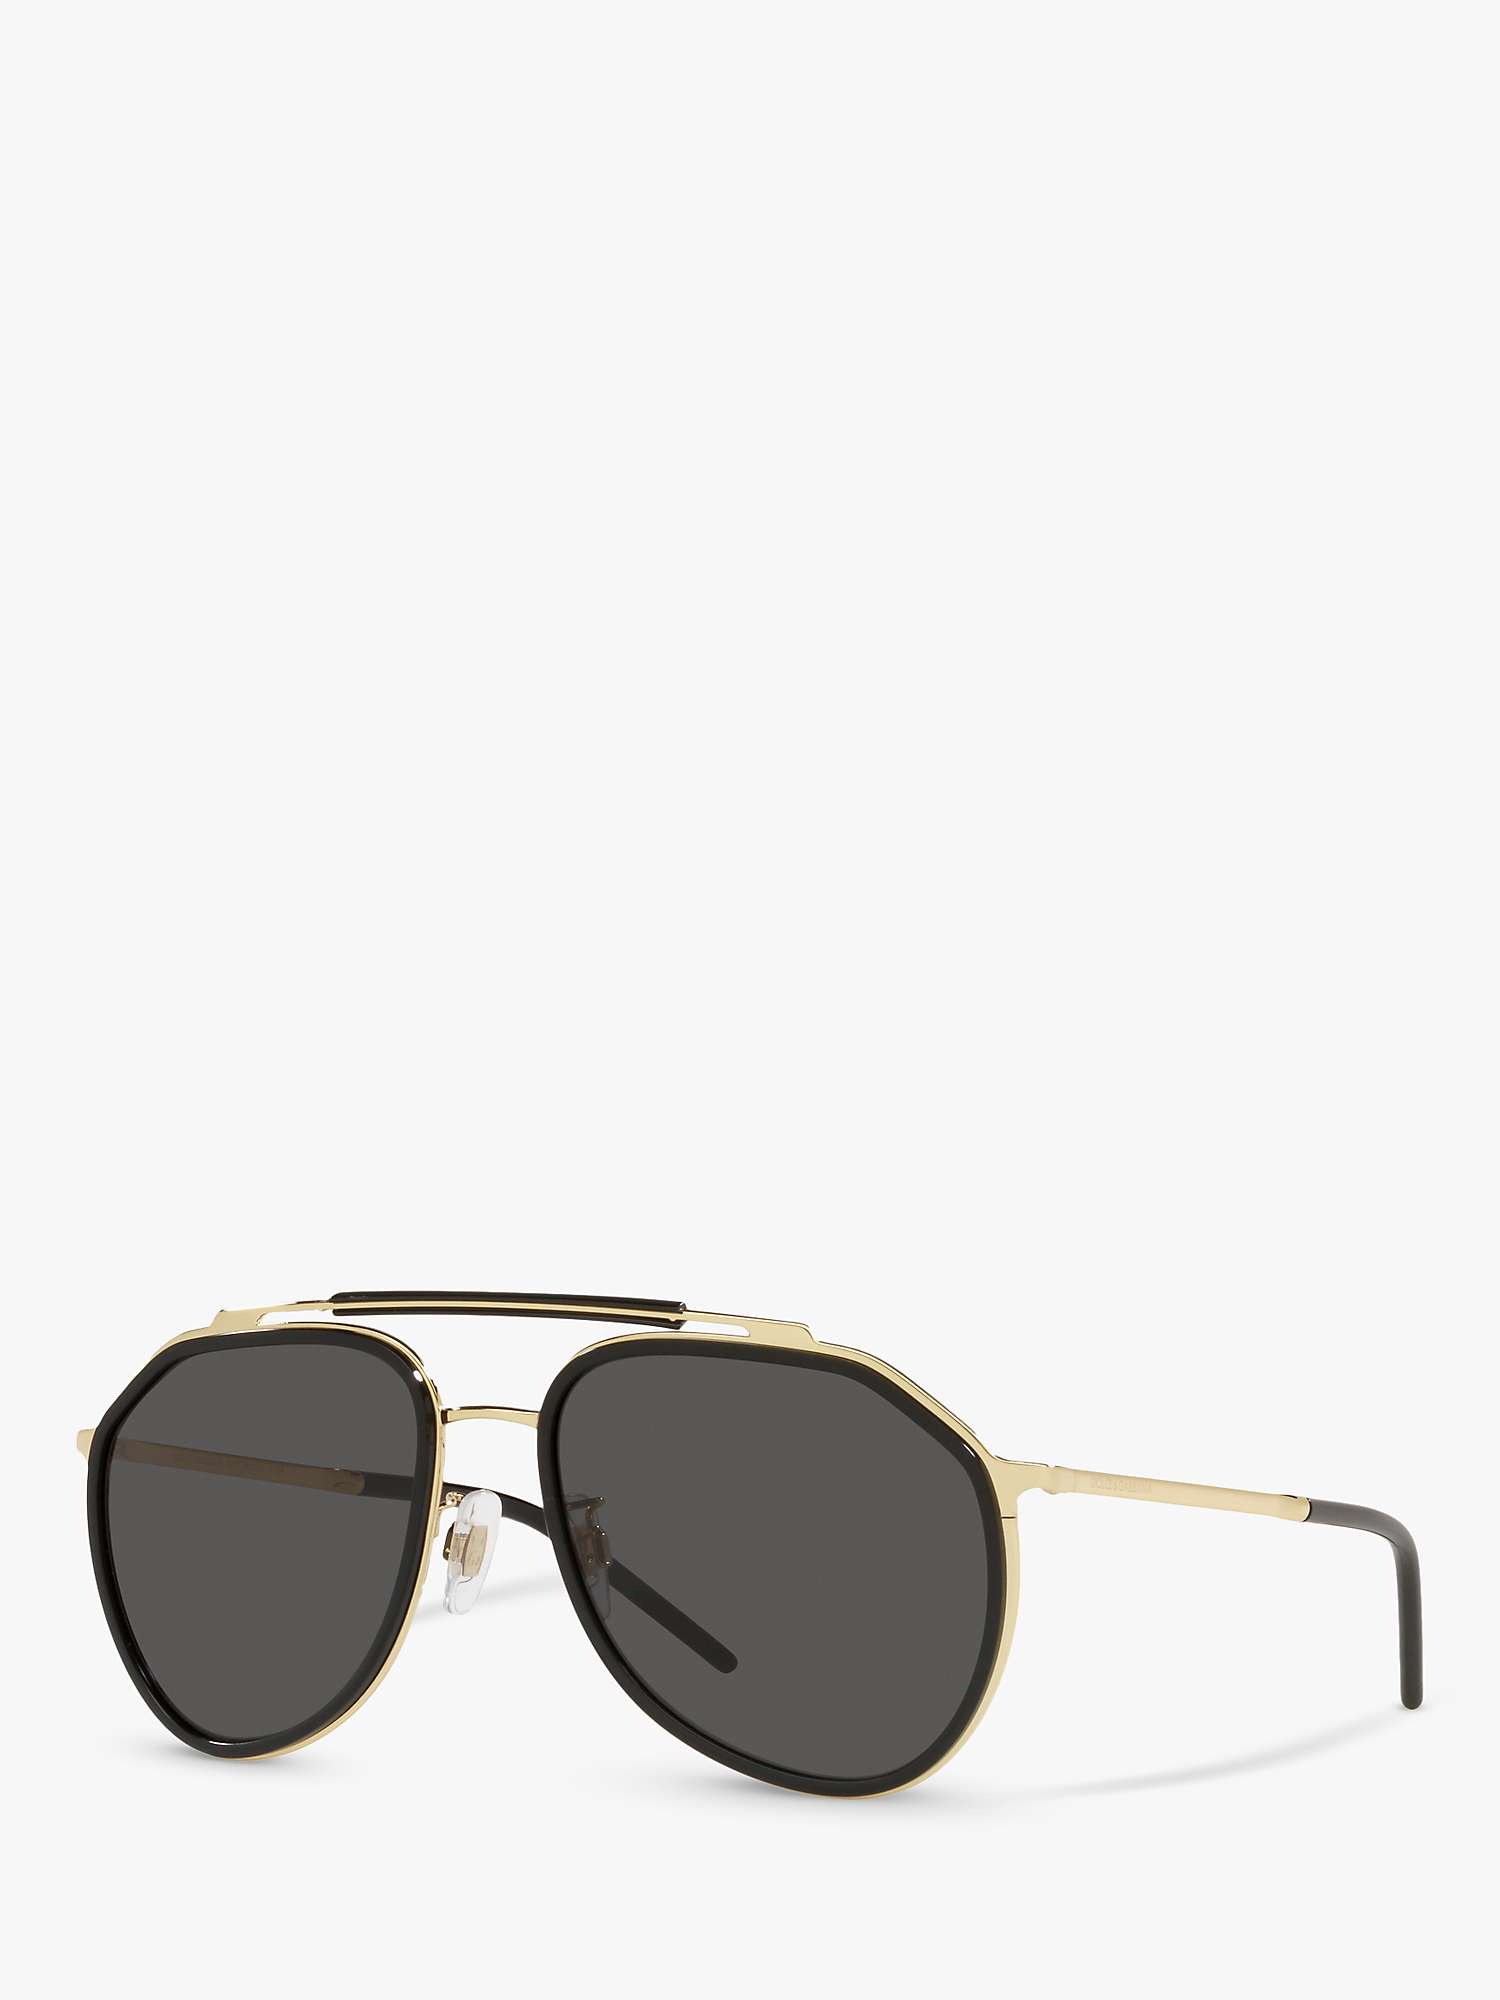 Buy Dolce & Gabbana DG2277 Men's Aviator Sunglasses, Gold/Black Online at johnlewis.com